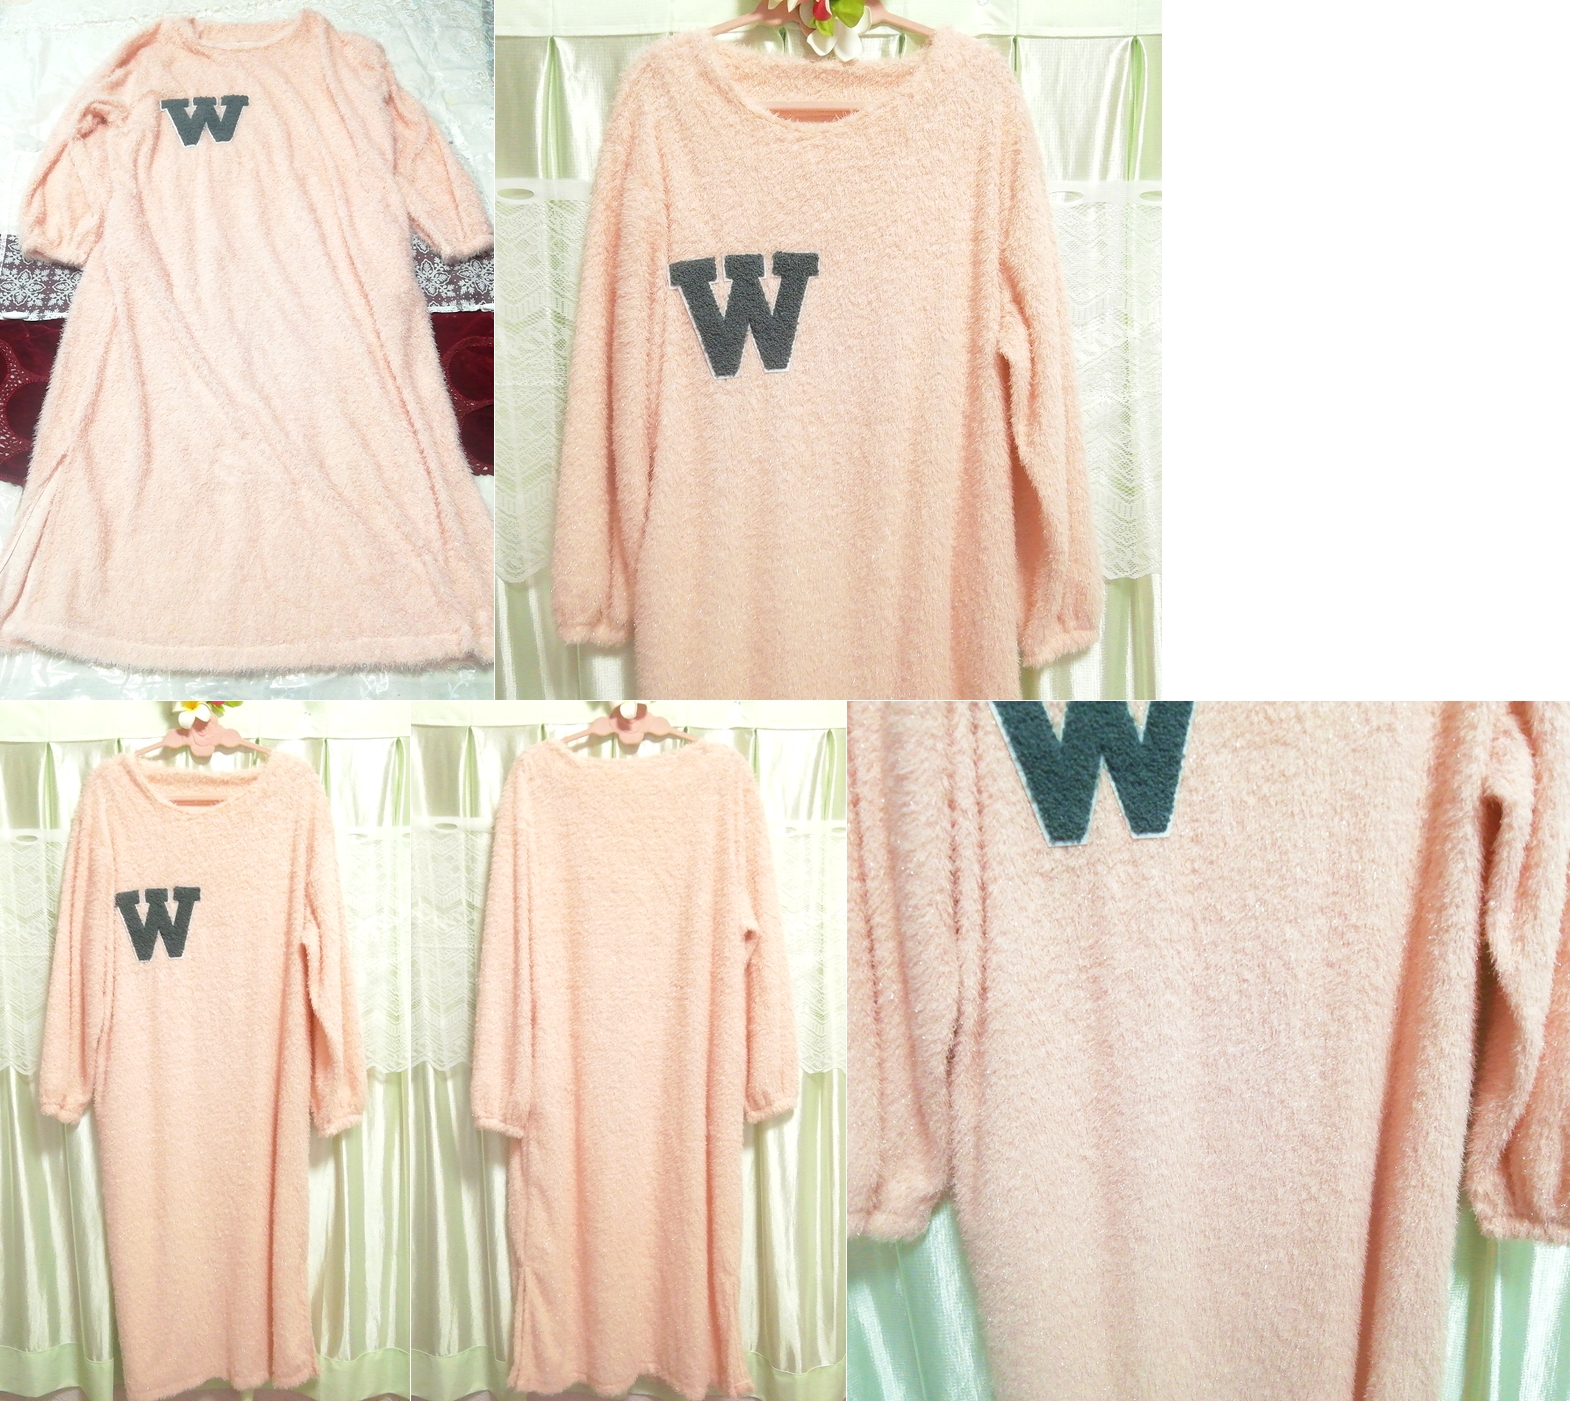 Wマークピンクロングラメマキシセーター W mark pink long glitter maxi sweater, ニット、セーター, 長袖, Mサイズ